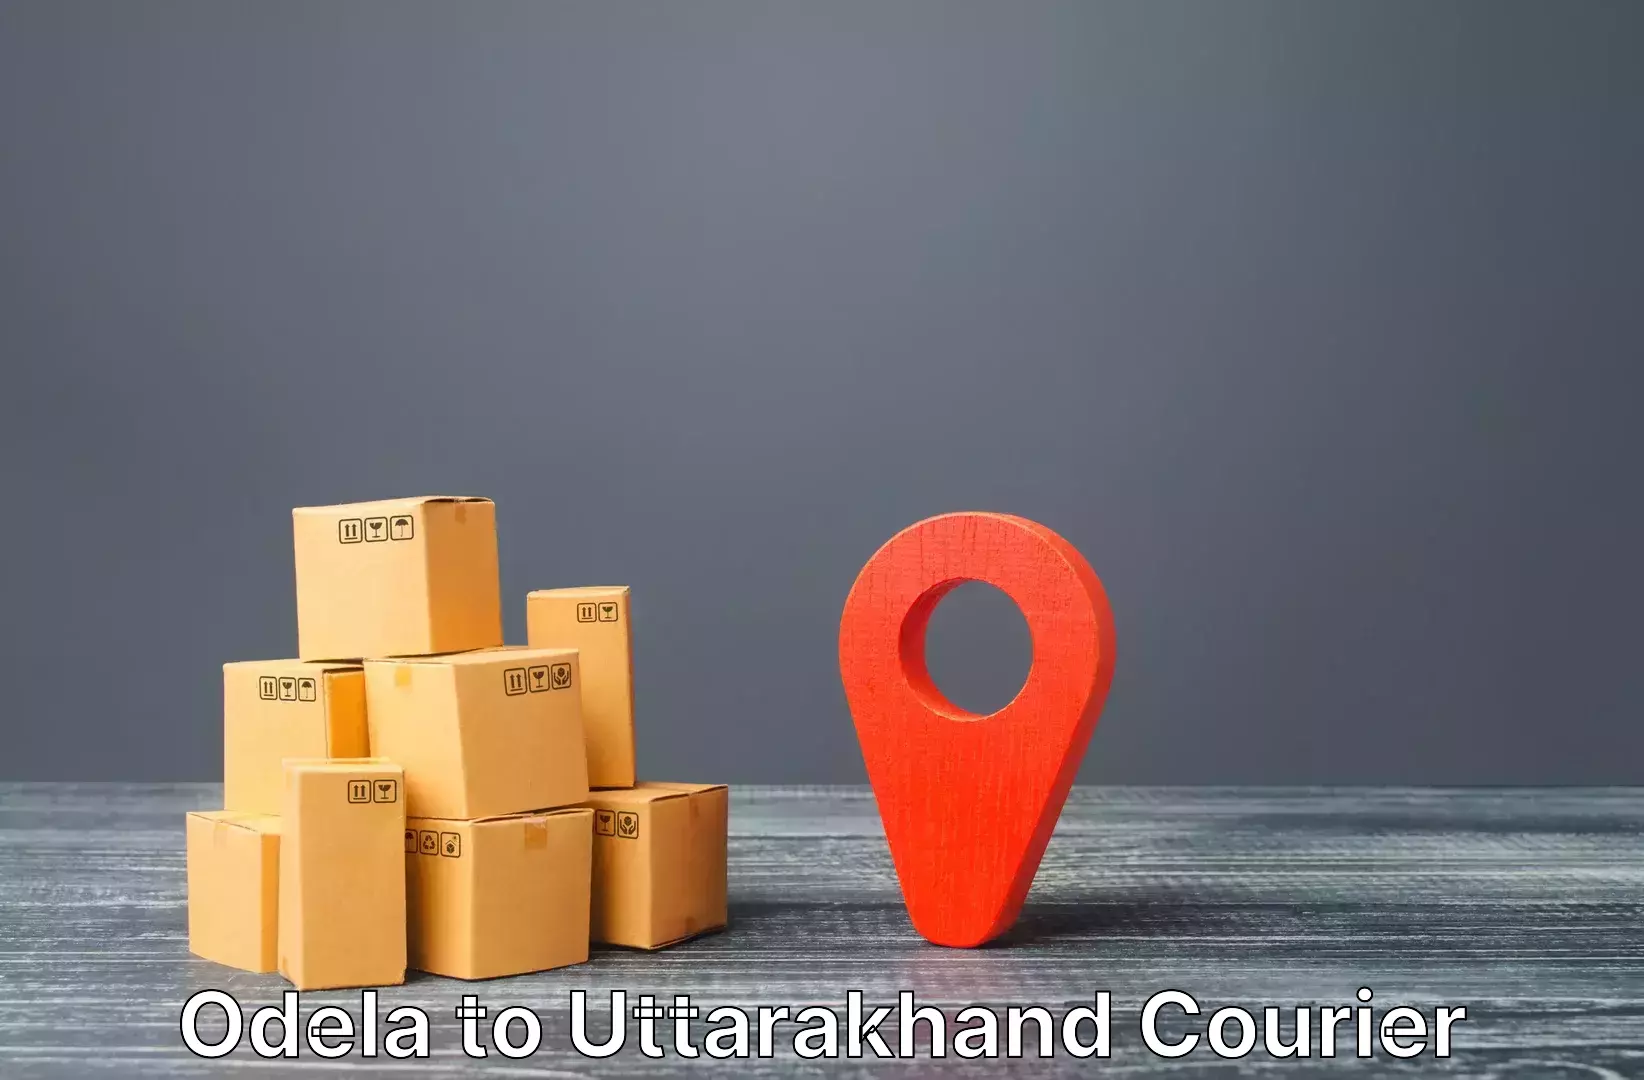 Luggage shipment processing Odela to Uttarakhand